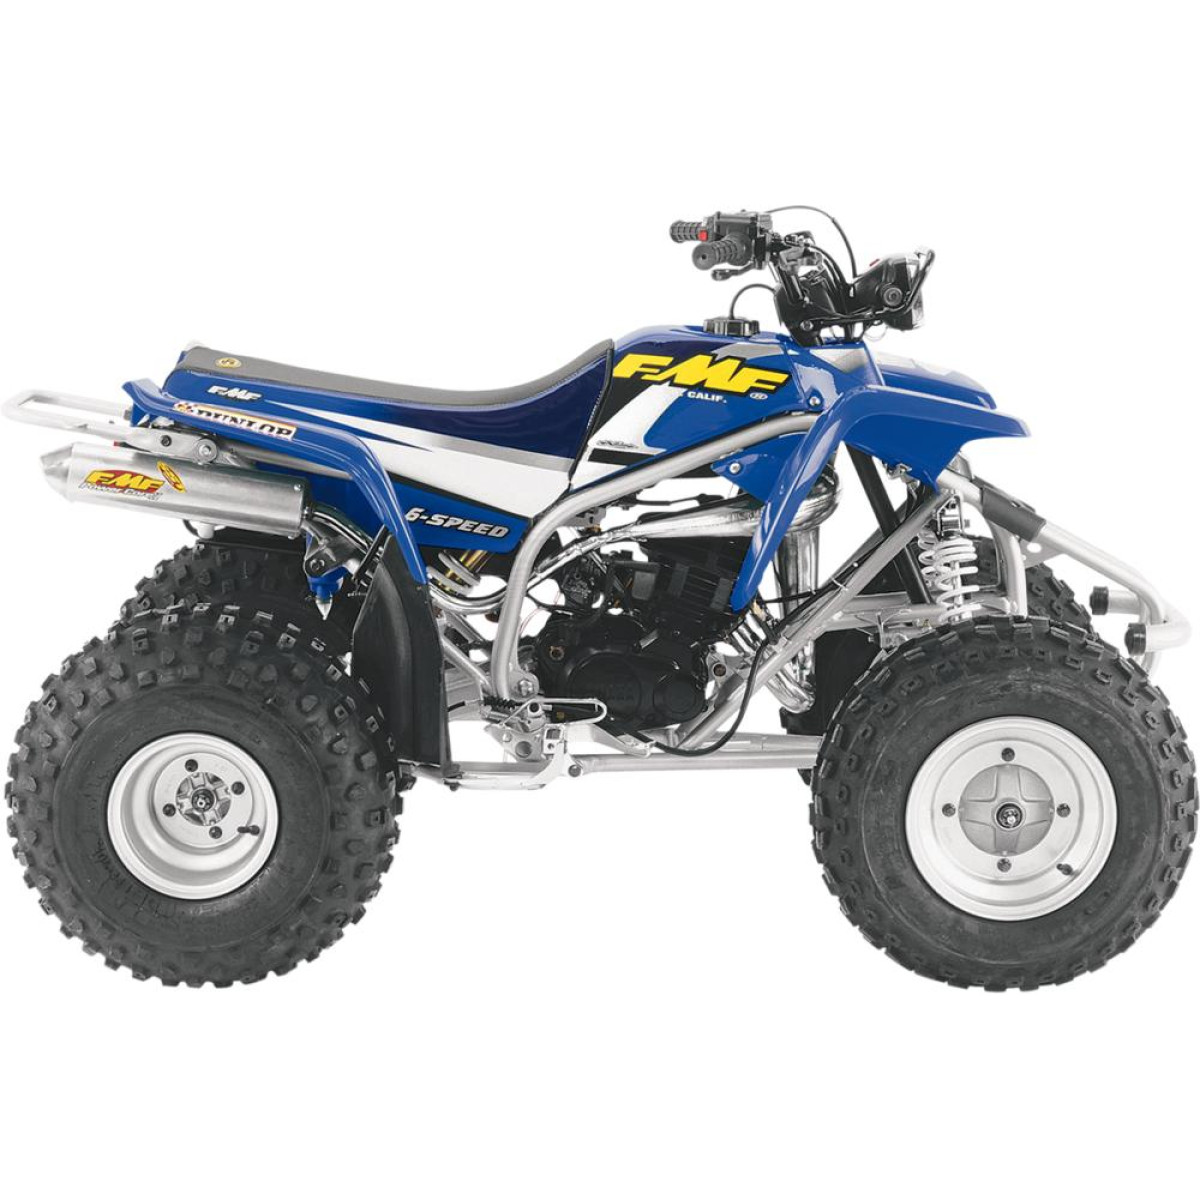 Hier finden Sie Ersatzteile und Tuningteile für Ihr Yamaha Blaster 200 Quad  und ATV. - Quad Motorrad Ersatzteile